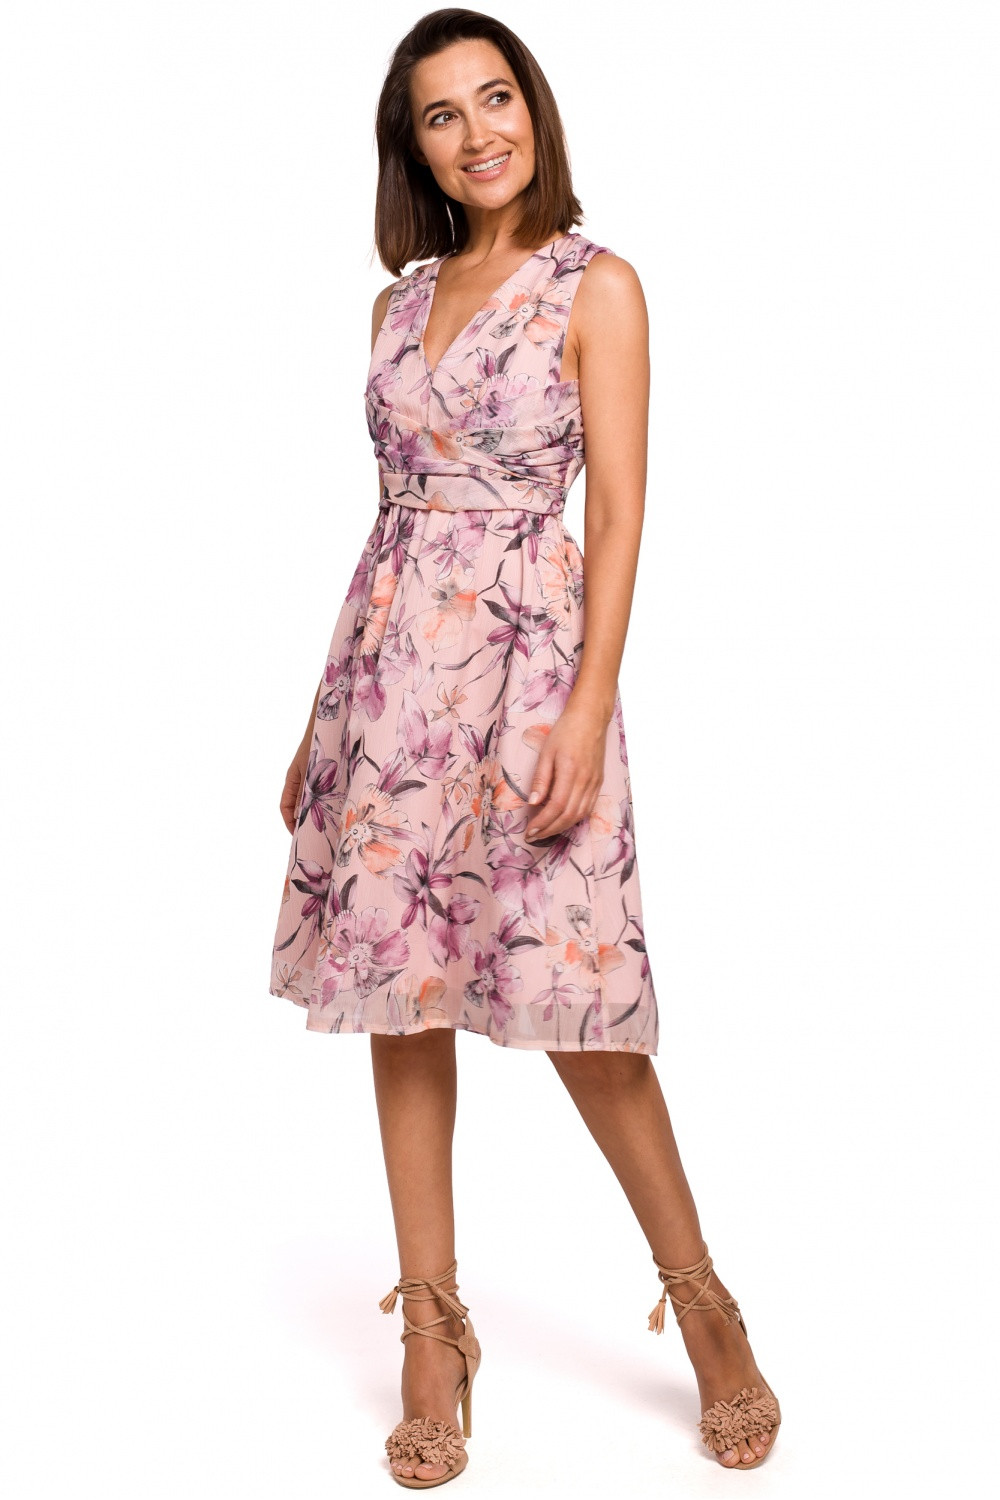 Dámské šaty S225 - Stylove růžová s květy 2XL